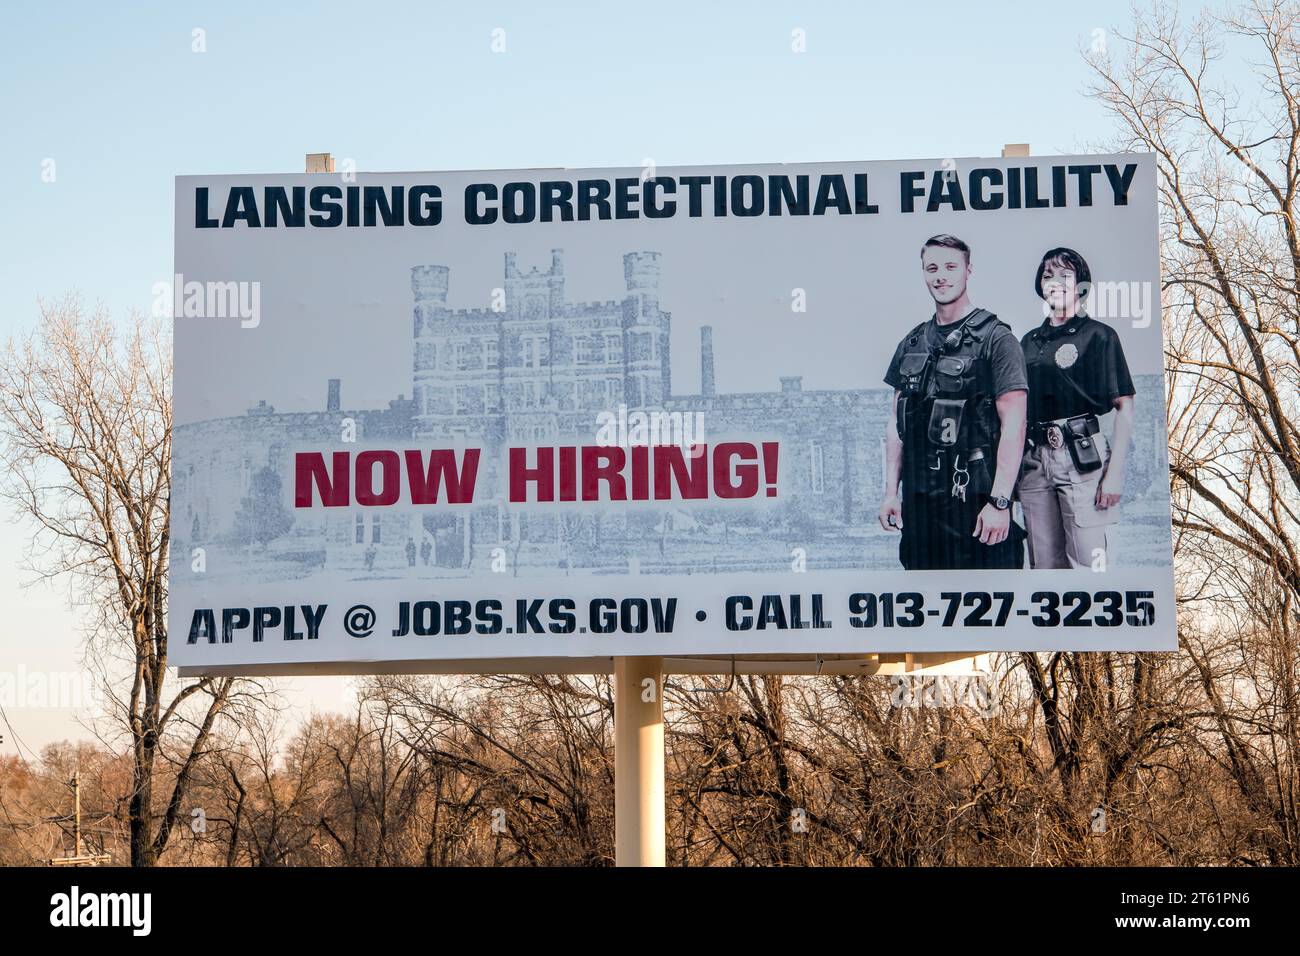 Lansing, Kansas. Établissement correctionnel de Lansing. publicité pour de l'aide à la prison. Banque D'Images